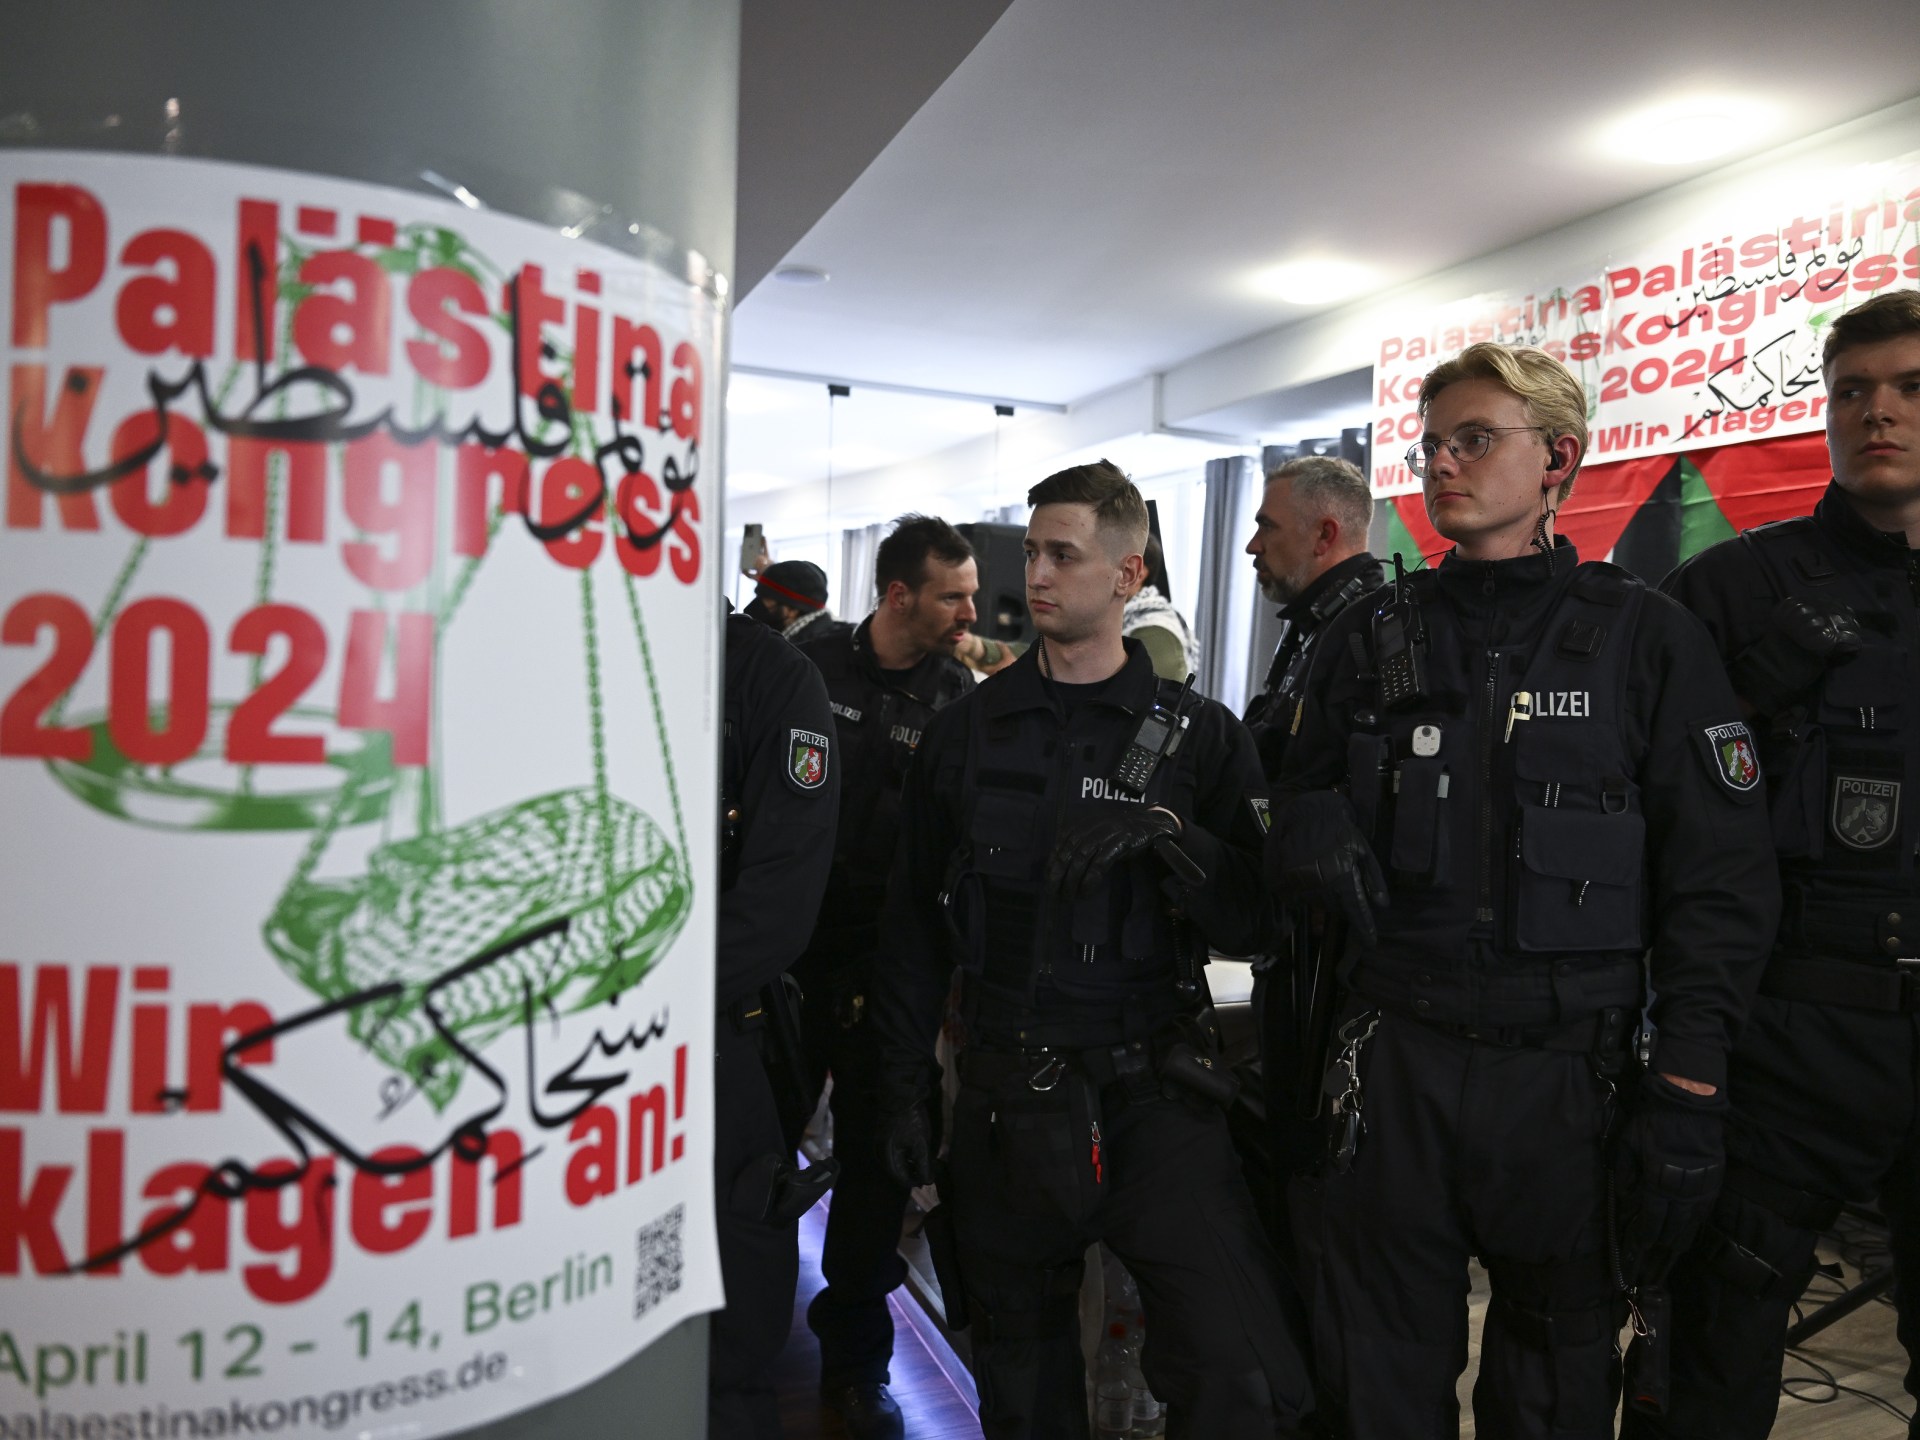 الشرطة الألمانية تحظر مؤتمرا مؤيدا للفلسطينيين في برلين | أخبار – البوكس نيوز